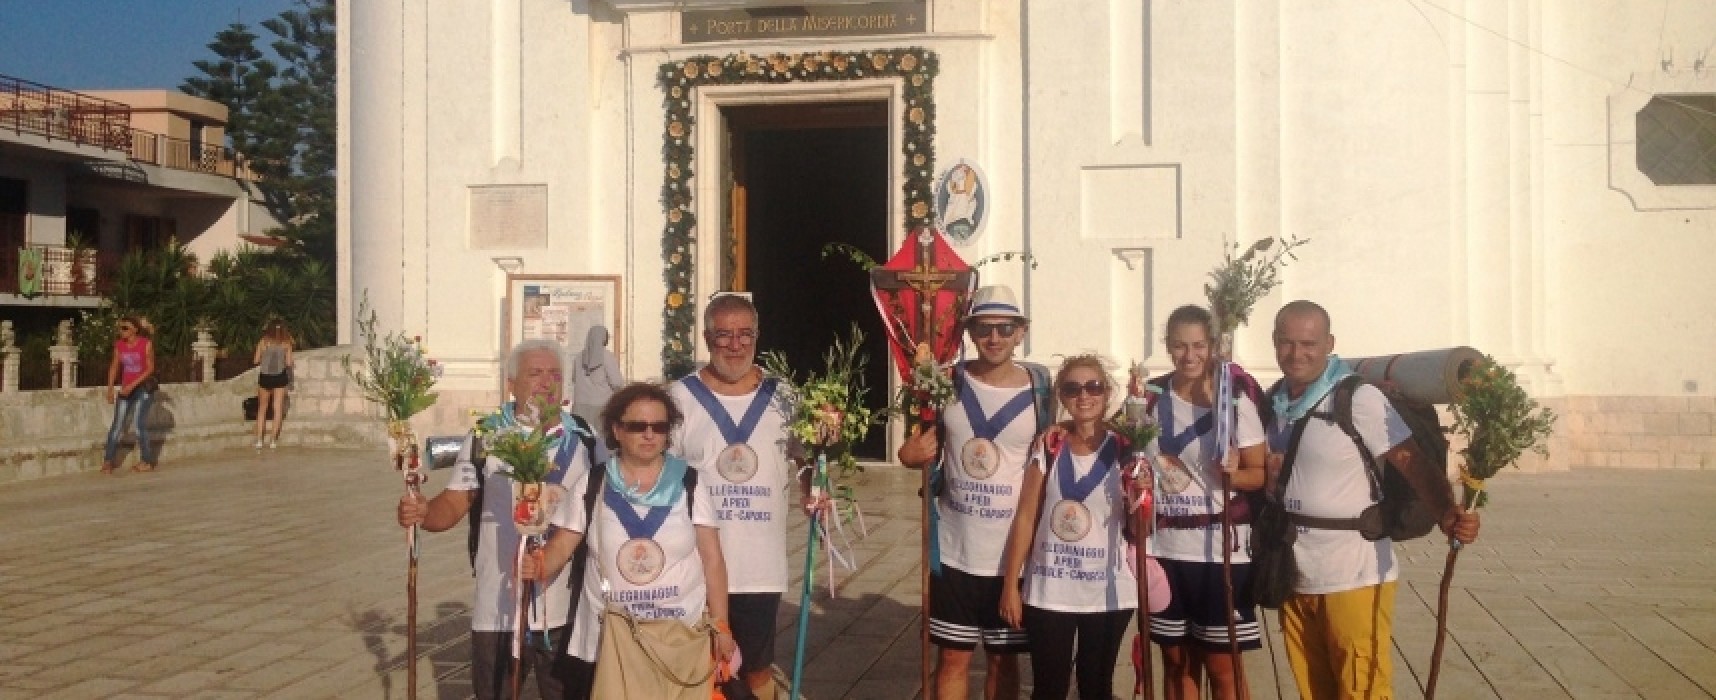 Nove pellegrini biscegliesi raggiungono a piedi Capurso per la Madonna del Pozzo / FOTO